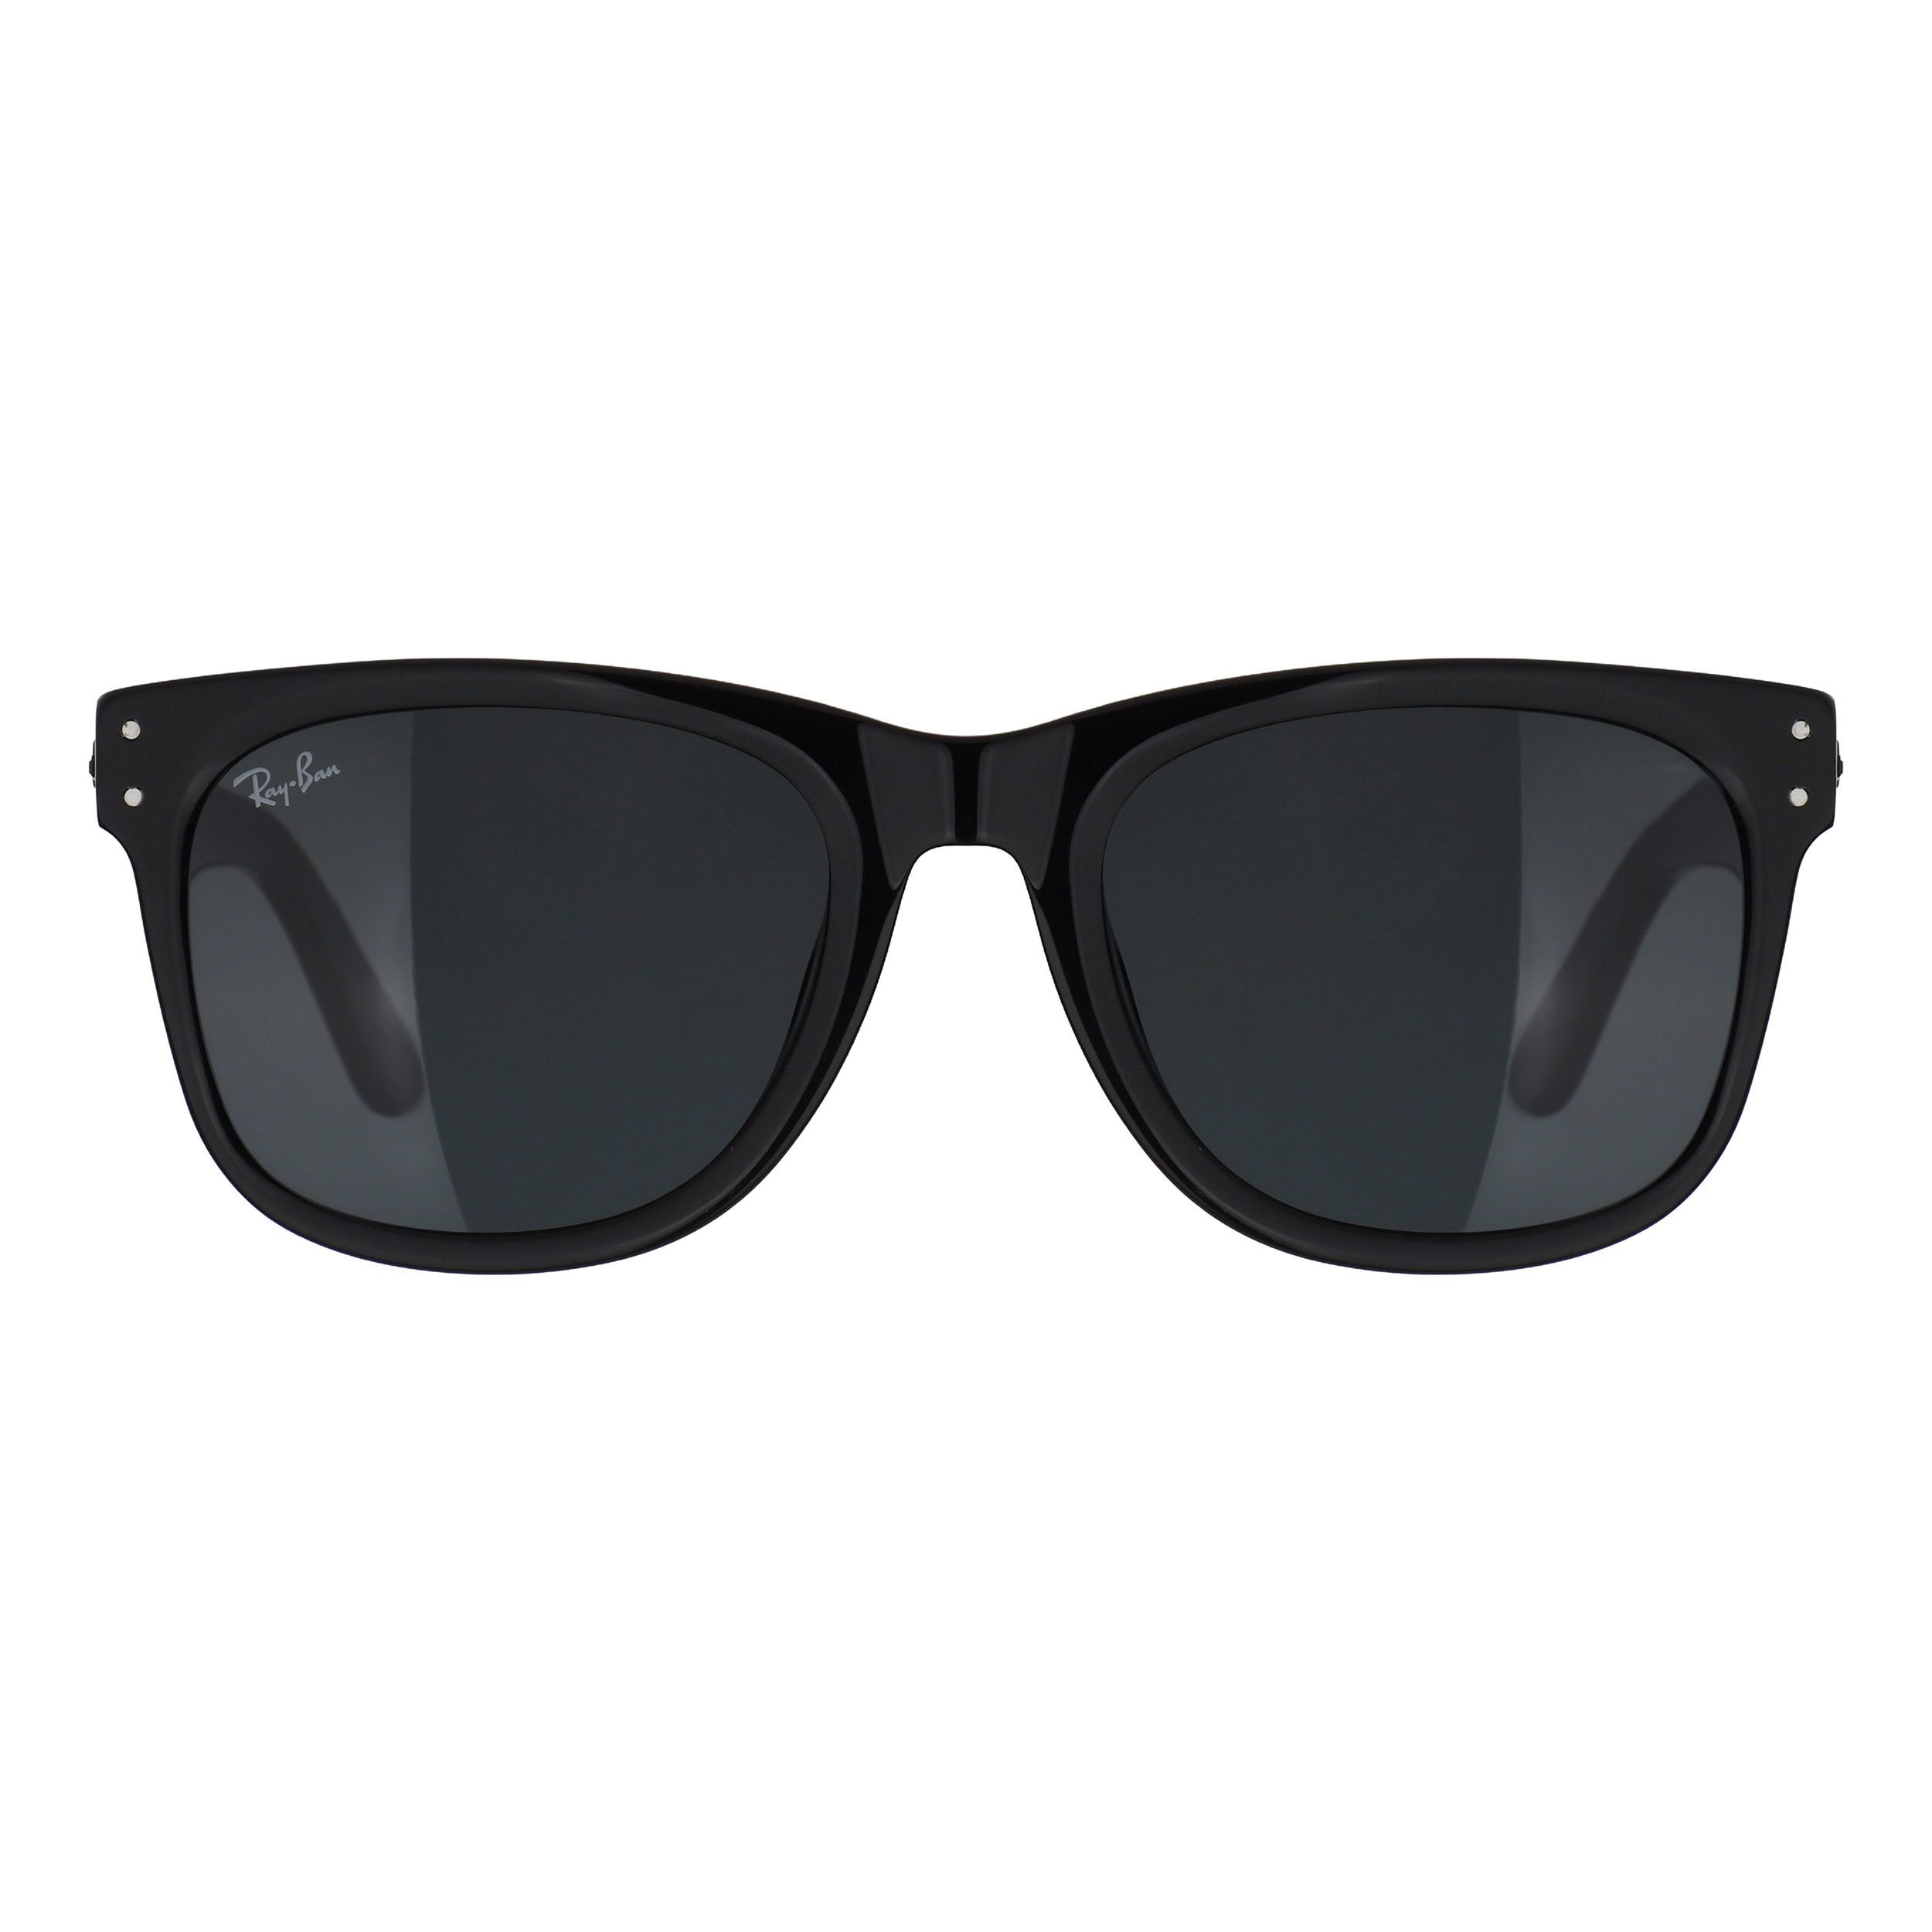 عینک آفتابی ری بن مدل Rb0502-901/31